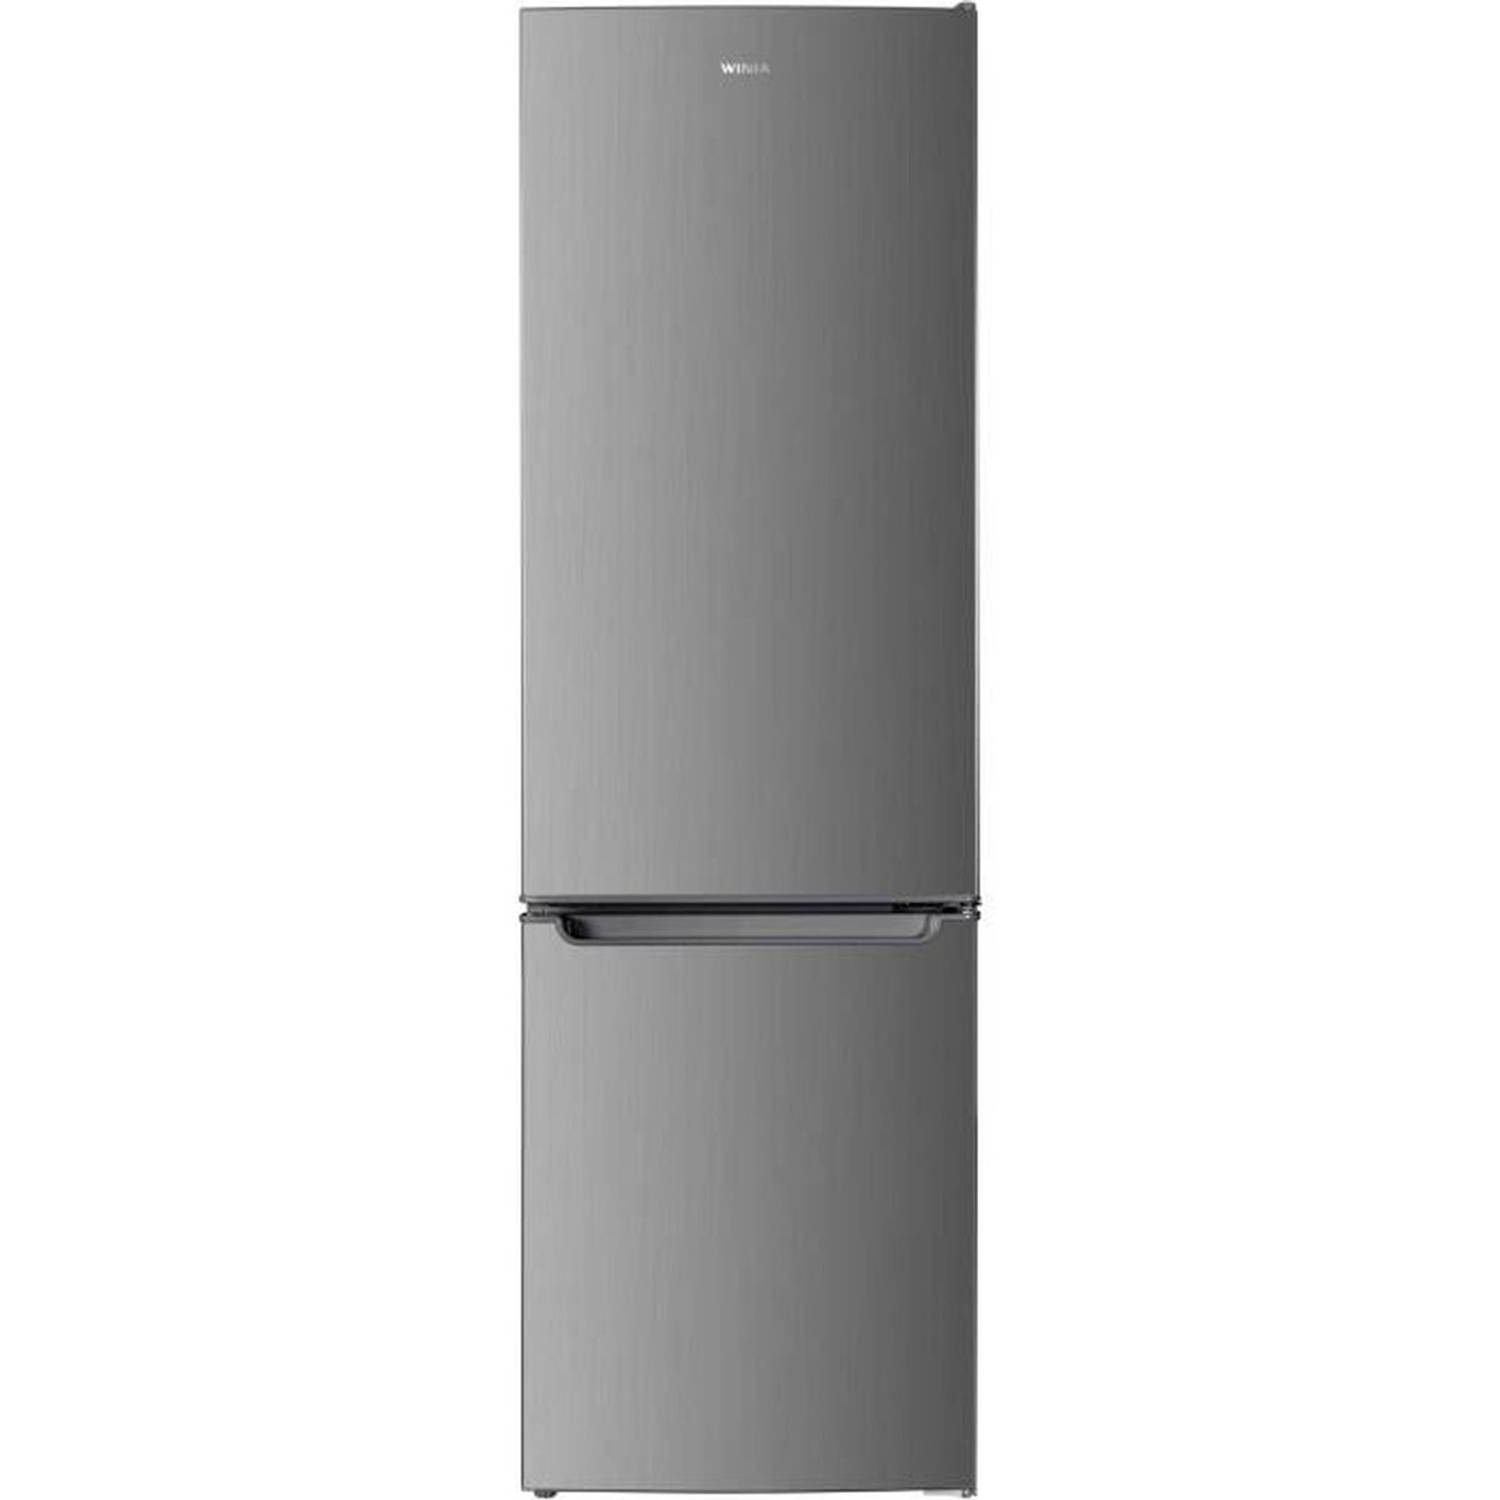 WINIA Gecombineerde koelkast - WRD-H27NX - 2 deuren - 262 Liter - l59,5 x L58 x h 186cm - Roestvrij staal